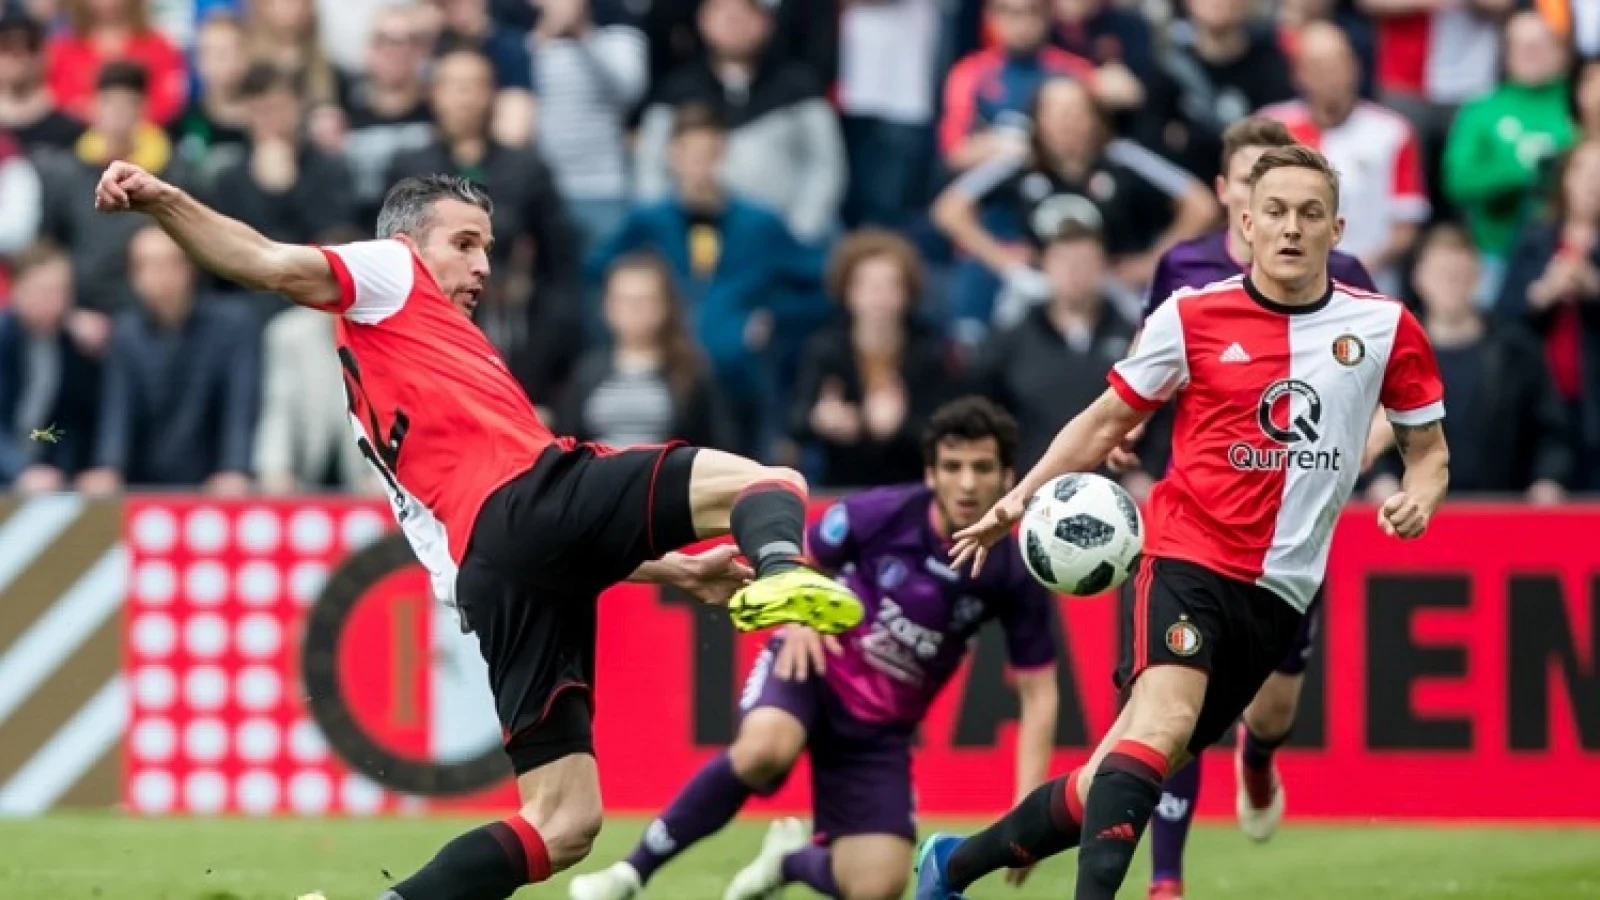 LIVE | Feyenoord - FC Utrecht 3-1 | Einde wedstrijd